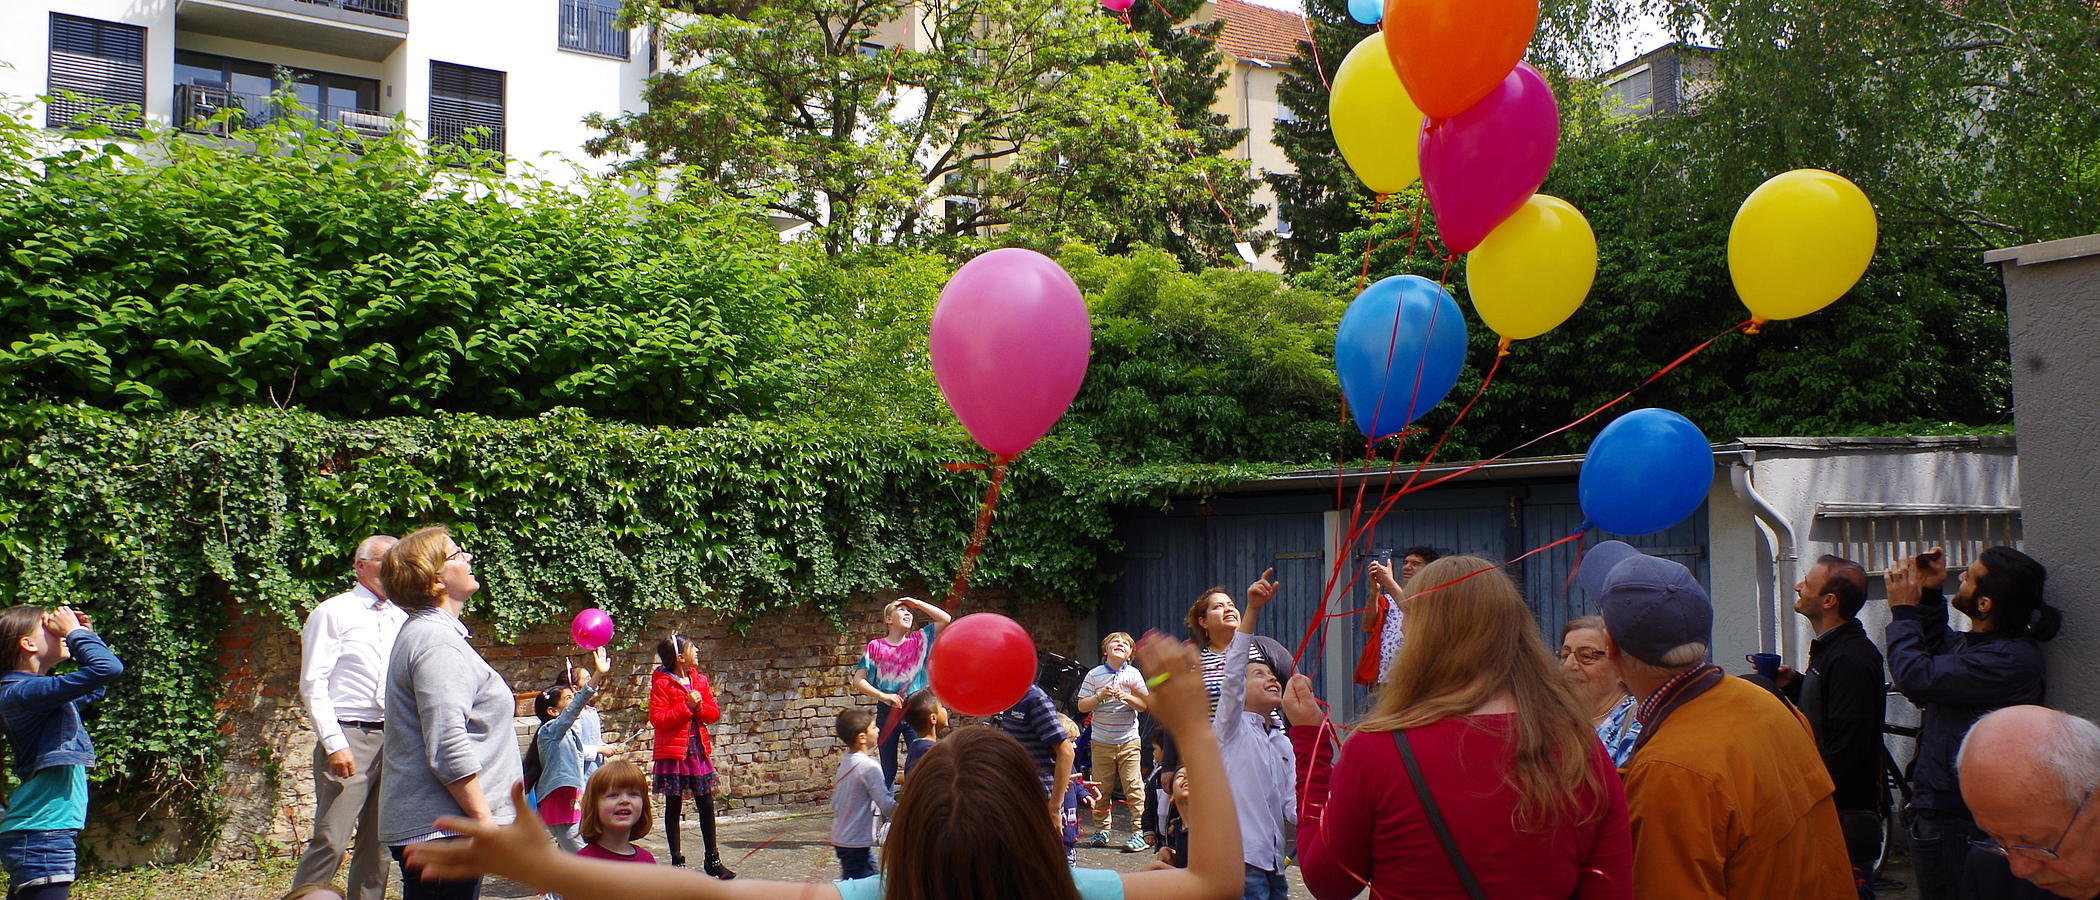 Viele Menschen aller Altersgruppen in einem Hinterhof lassen Luftballons steigen.